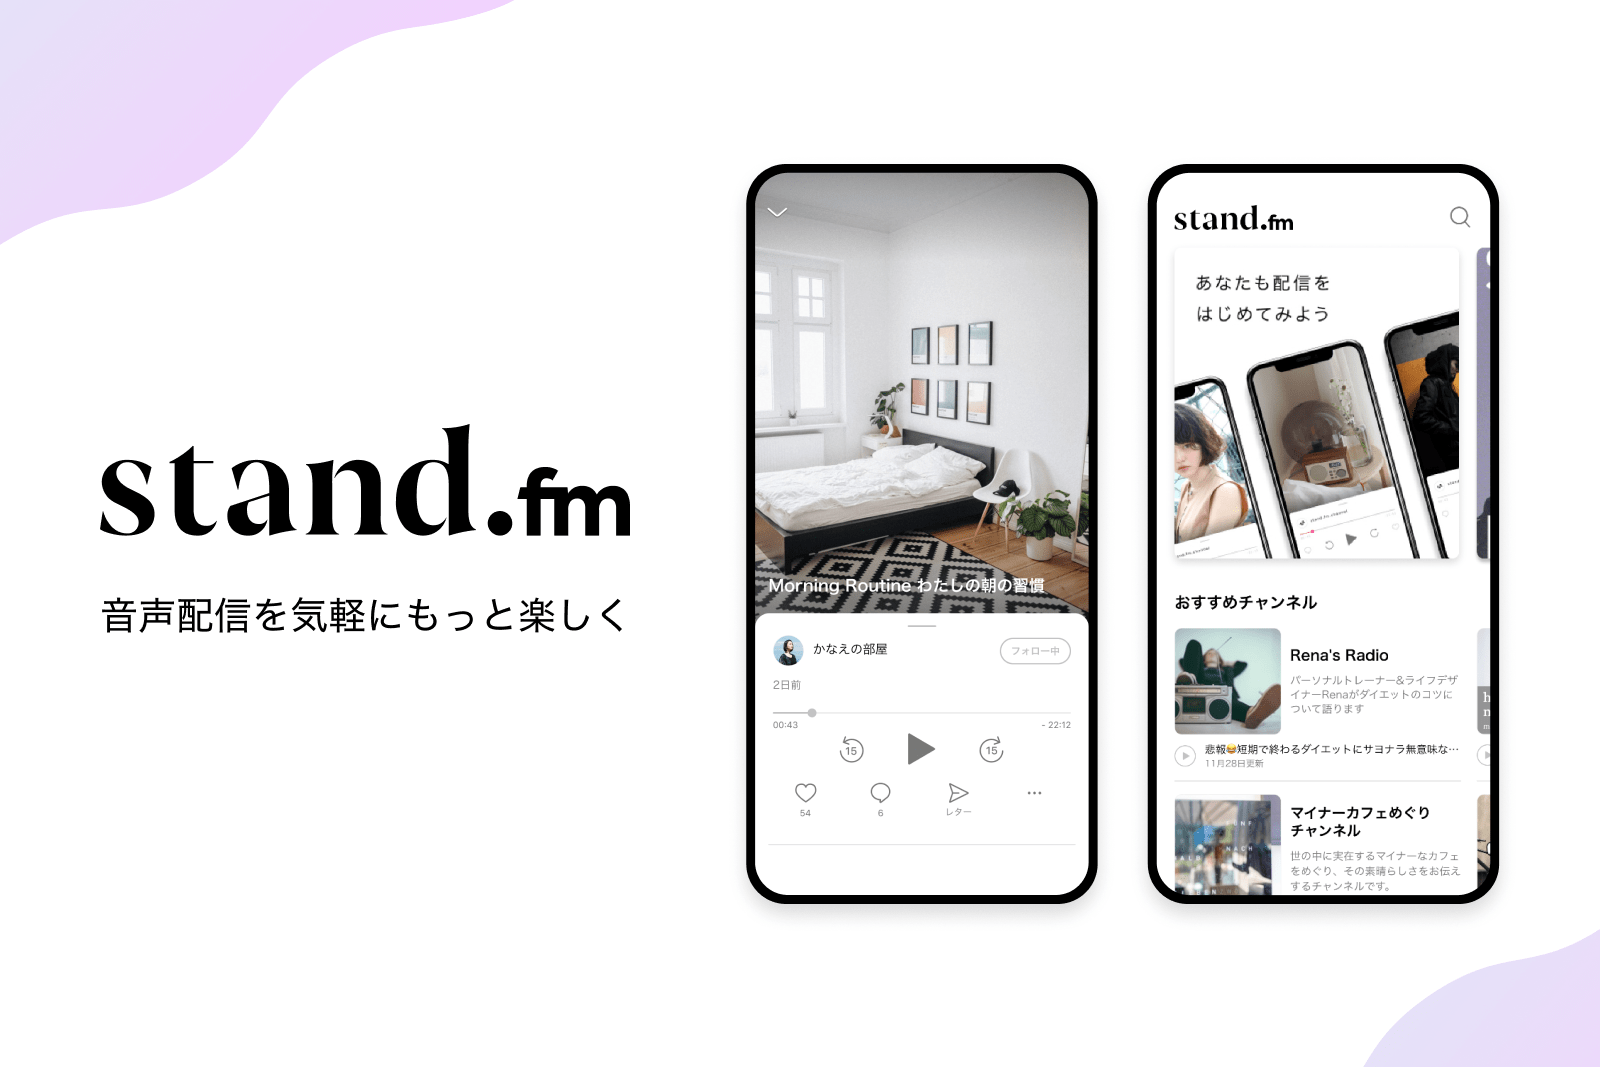 ホリプロコム、松竹など芸能事務所21社と提携──音声配信アプリ「stand.fm」が新たな一手